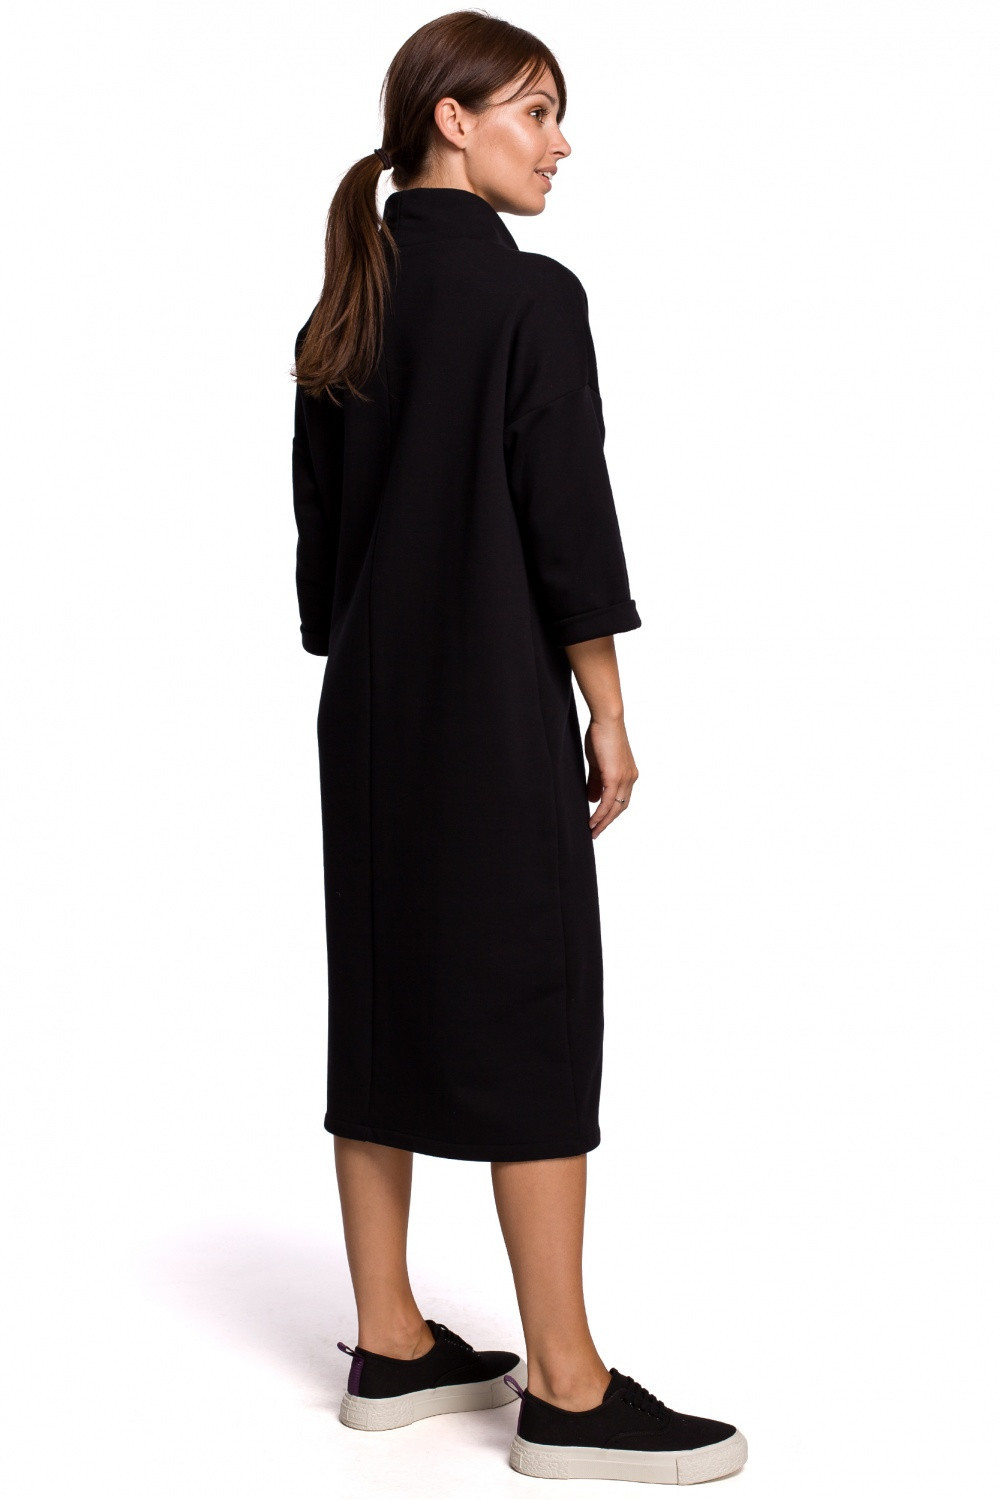 Dámské šaty model 147160 - BeWear černá S/M